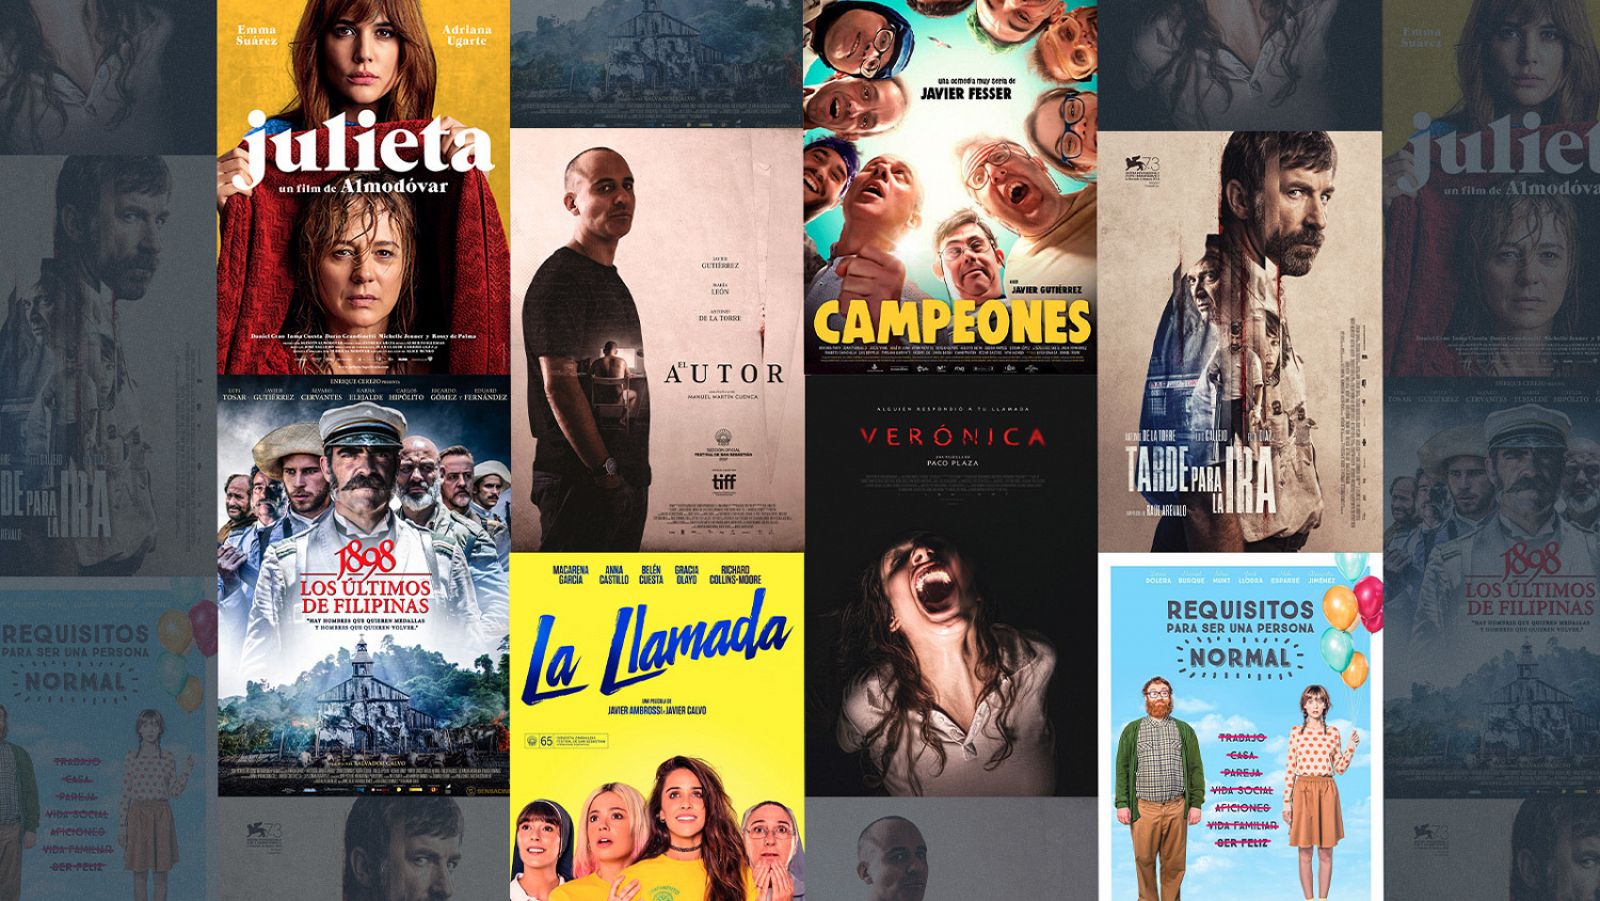 RTVE Digital lanza el portal 'Somos cine' con más de 60 películas españolas gratis y en abierto